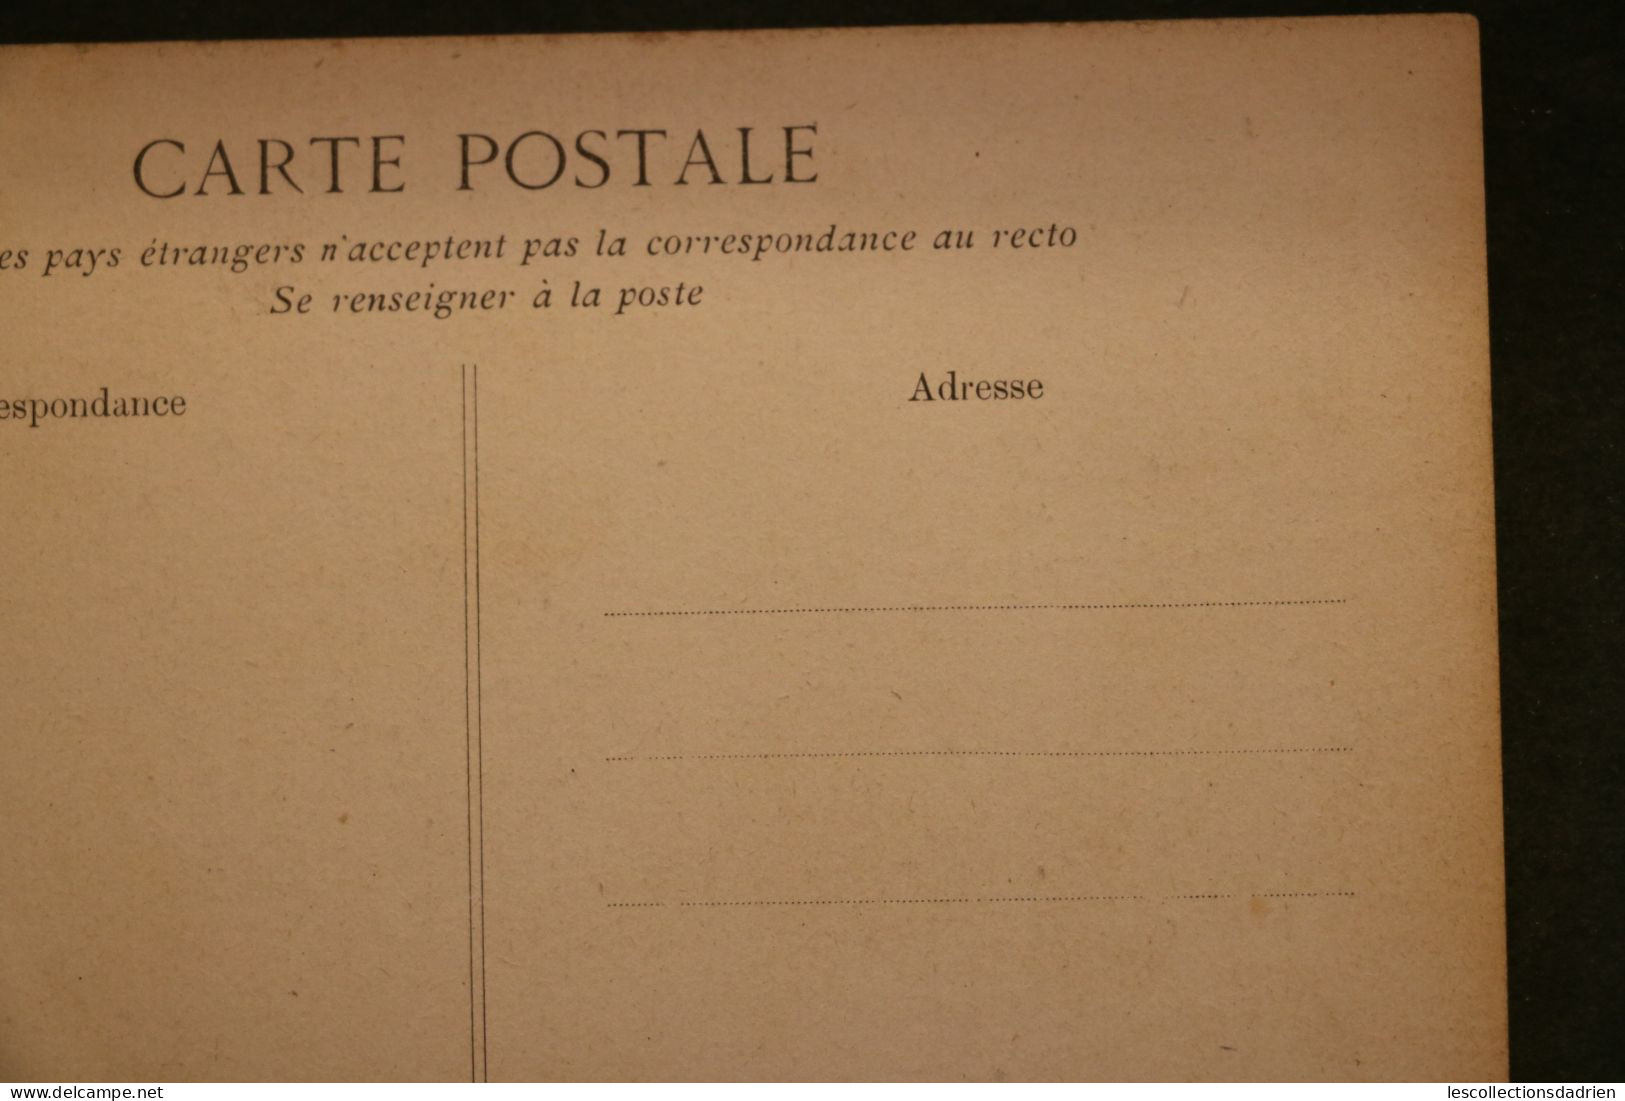 Carte postale ancienne - Versailles hameau du Petit Trianon le parc maison de la Reine